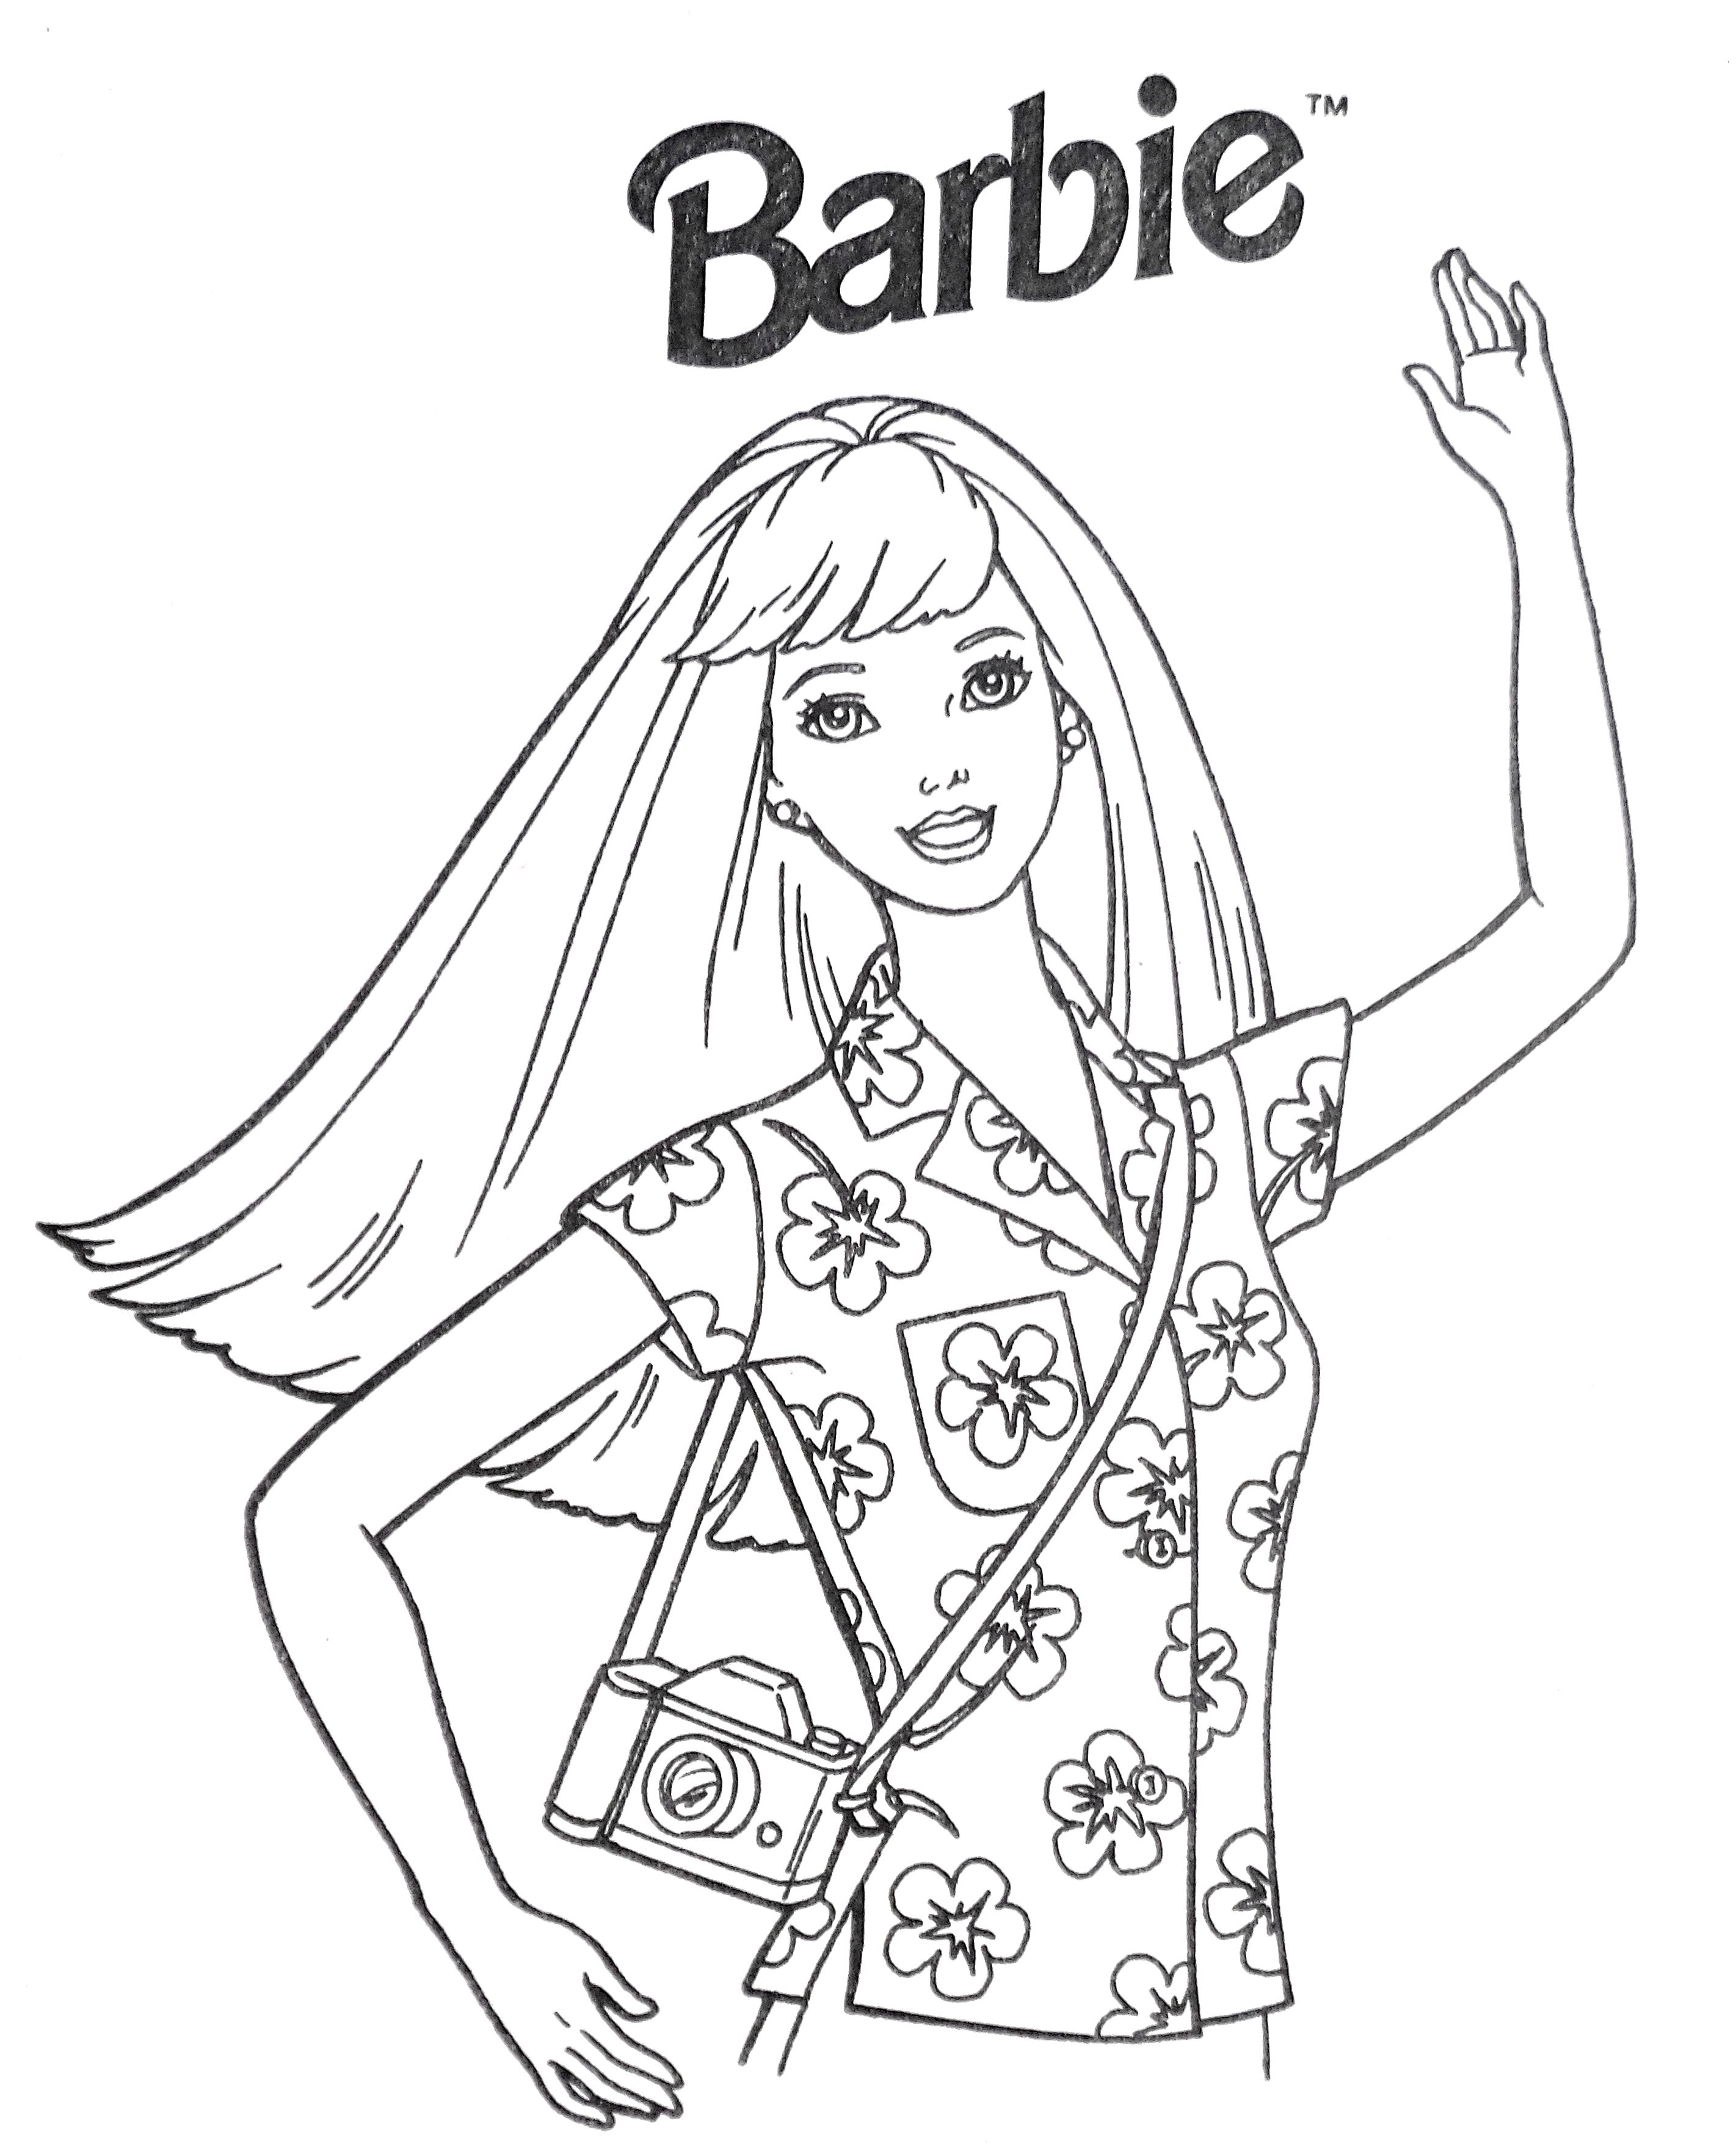 Gratis Kleurplaten van Barbie en haar vriendinnen - Prinses, Mode, Kerst en meer!